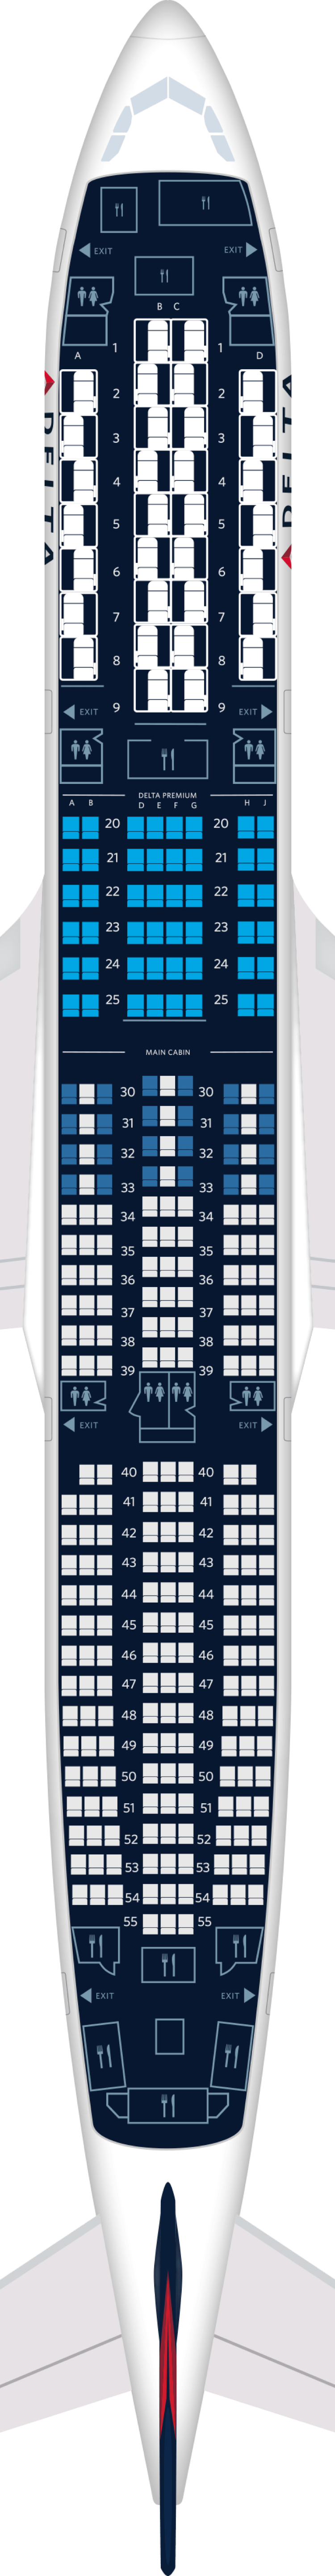 seat map image